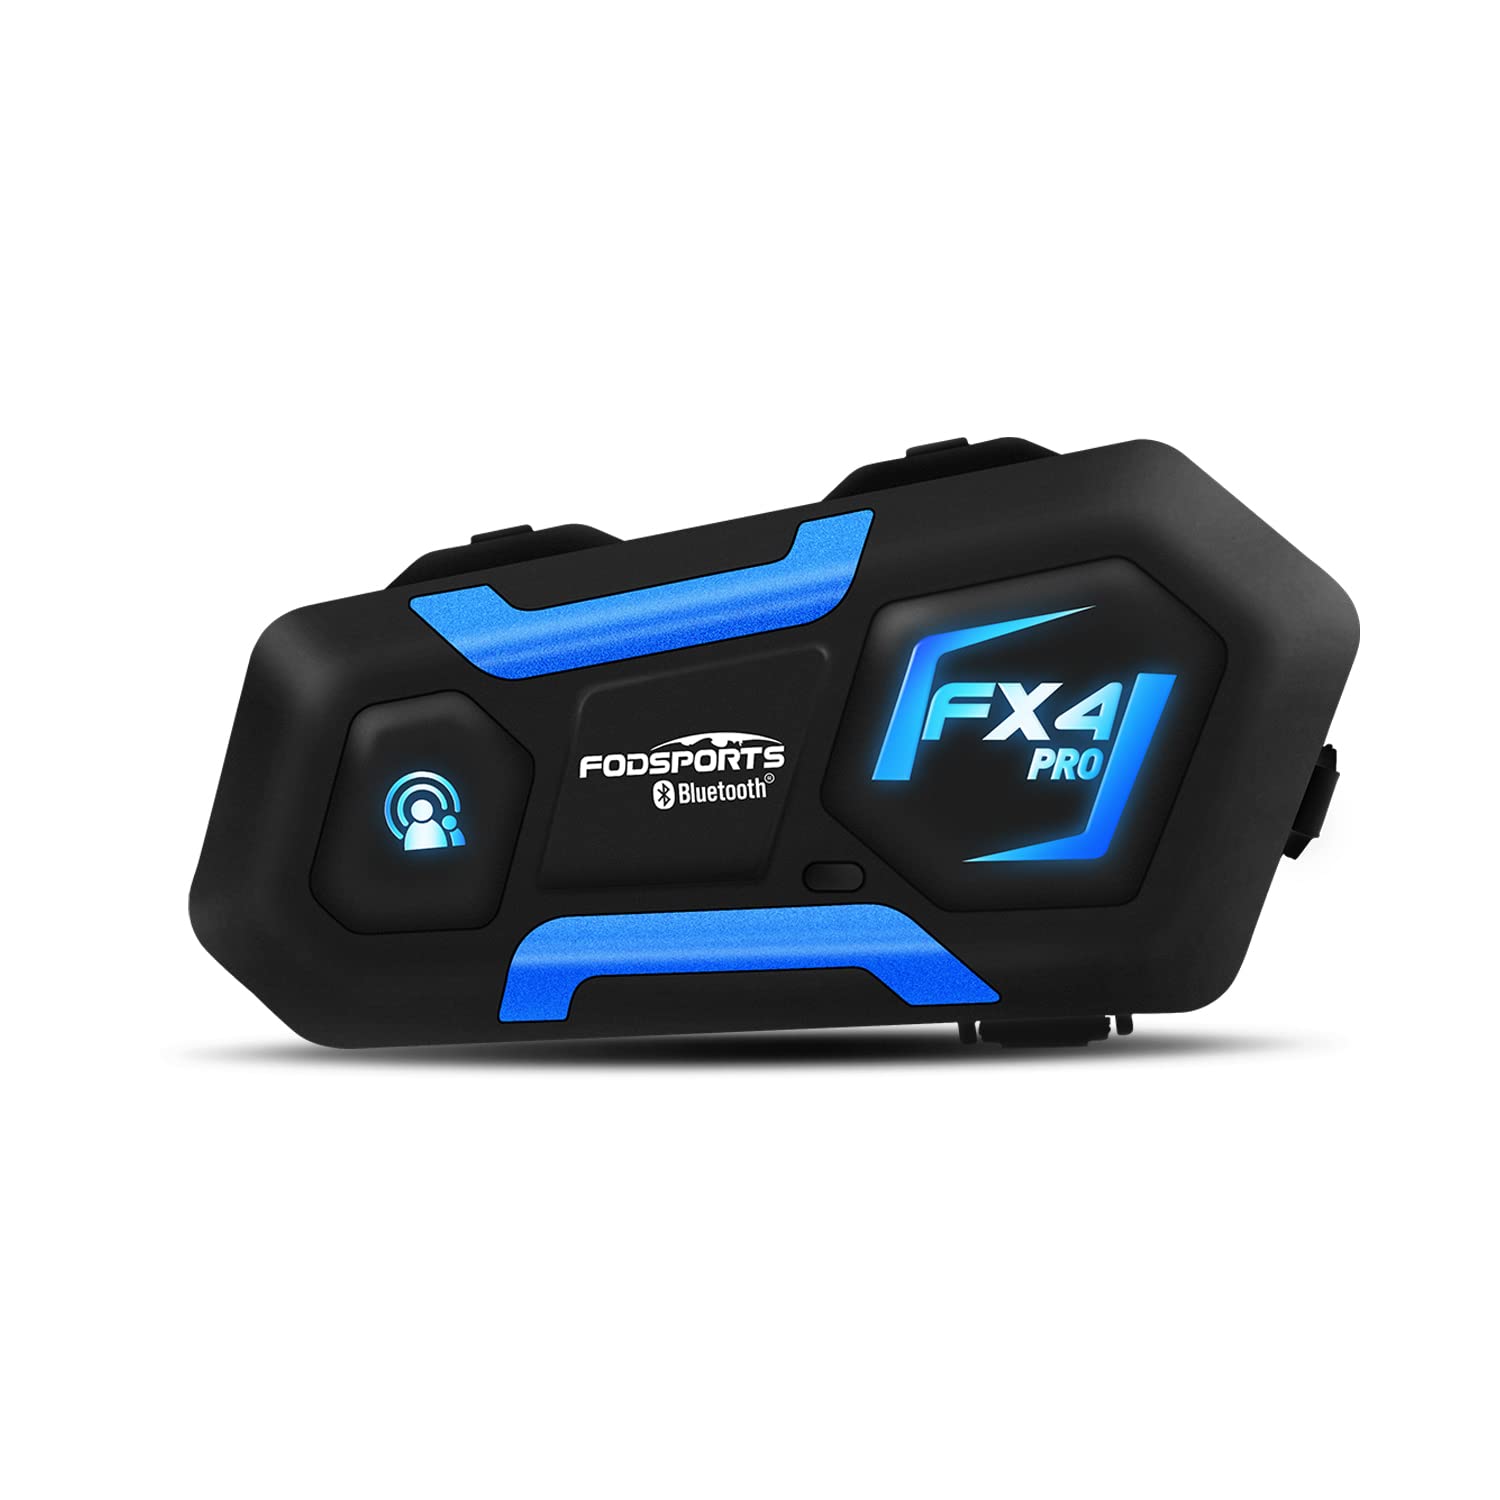 Fodsports FX4 PRO Motorrad Bluetooth Headset, Motorrad Kommunikationssystem für bis zu 4 Motorräder mit 1200m Reichweite, Universell Wasserdichtes Helm Intercom mit GPS und FM Radio